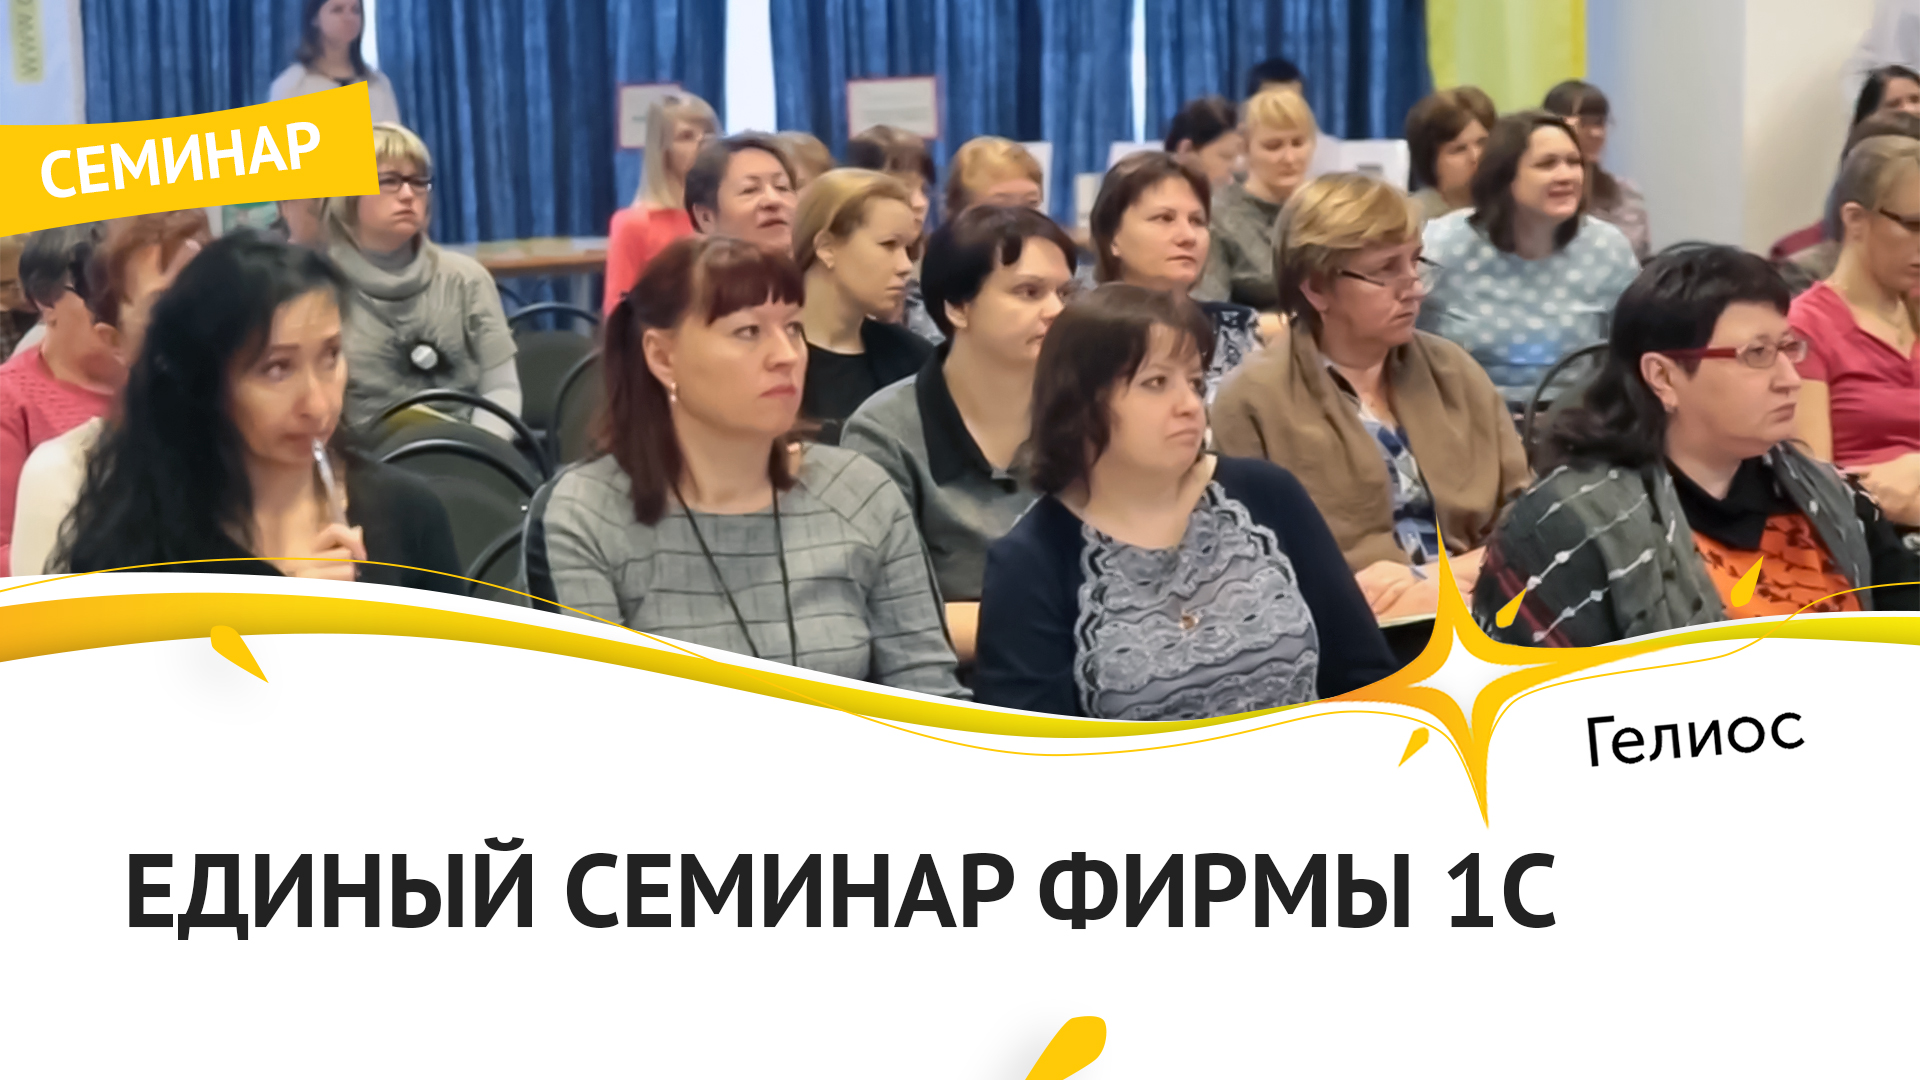 ГЕЛИОС-С провели Единый семинар 1С - 2017 в Костроме